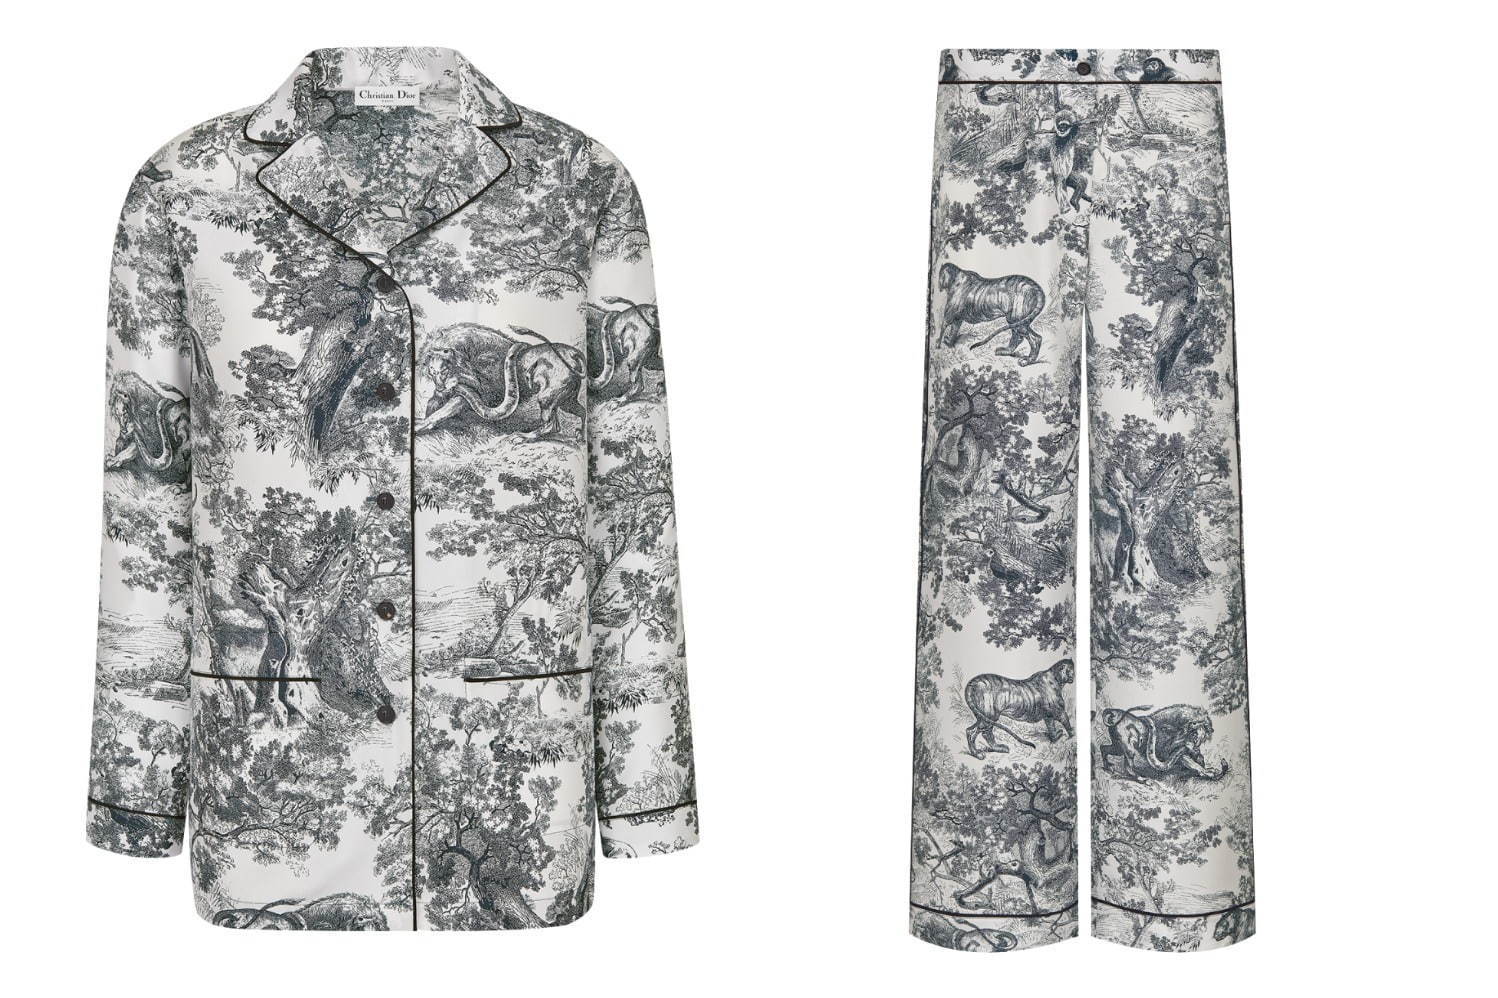 左から)パジャマジャケット 220,000円(税込)
パジャマパンツ 198,000円(税込)